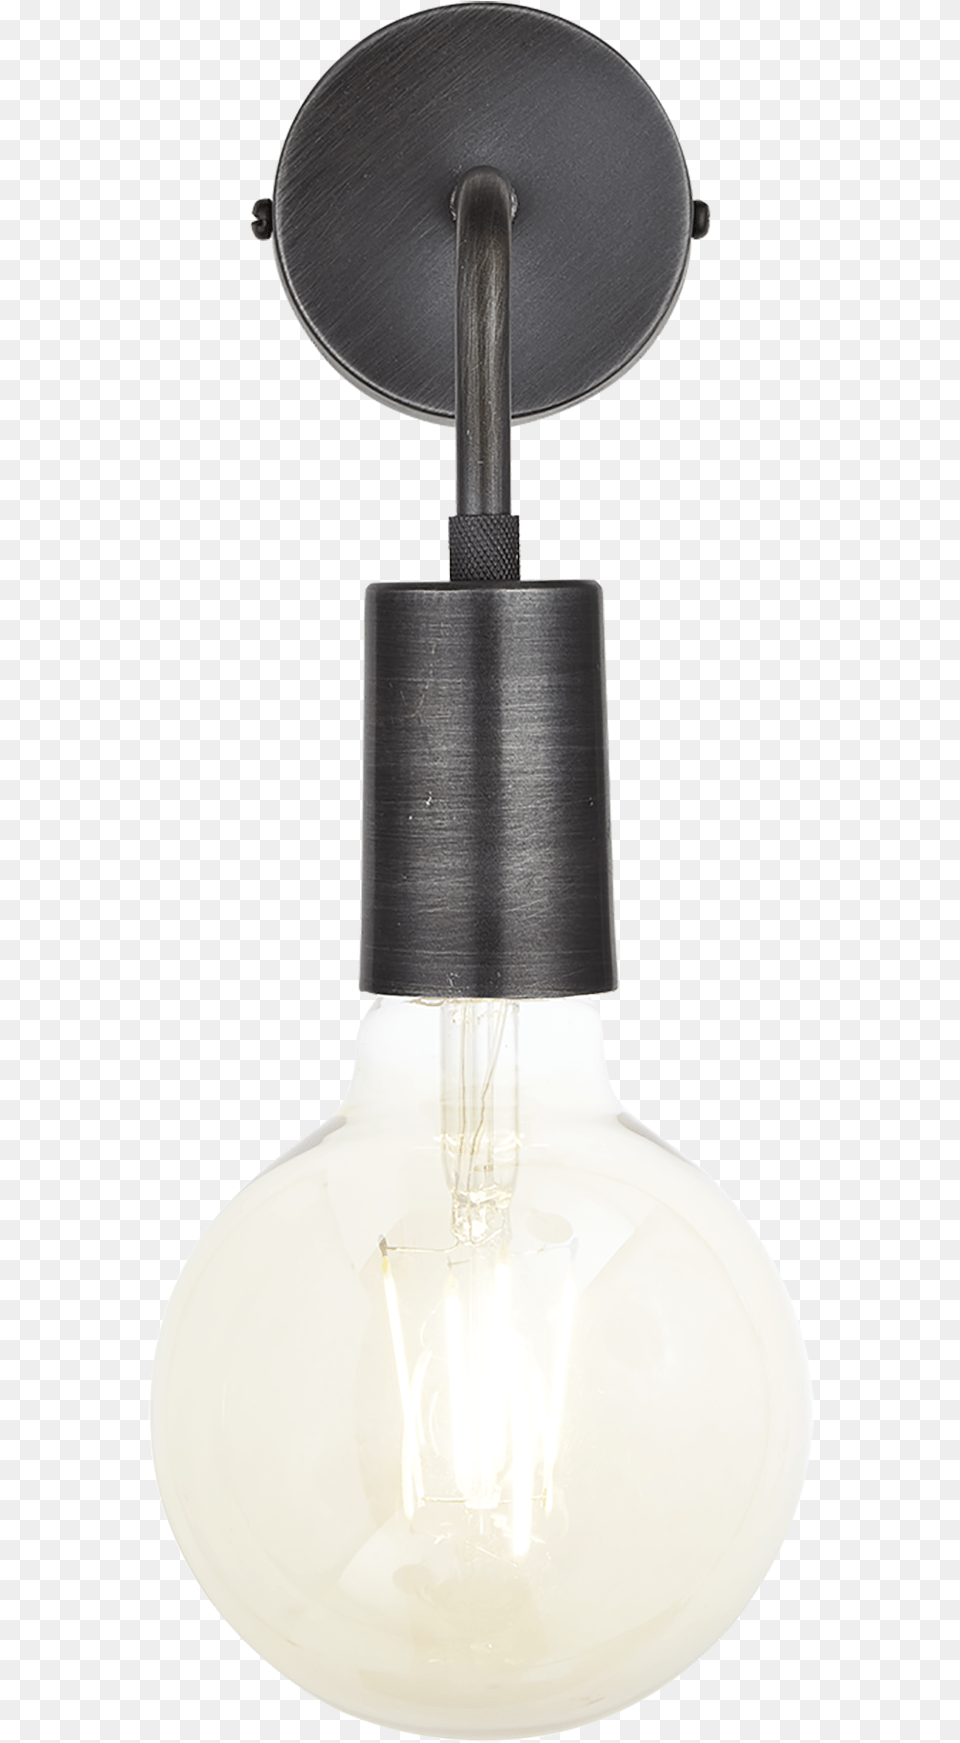 Industville Sleek Edison Wall Light, Lamp, Lightbulb Free Transparent Png